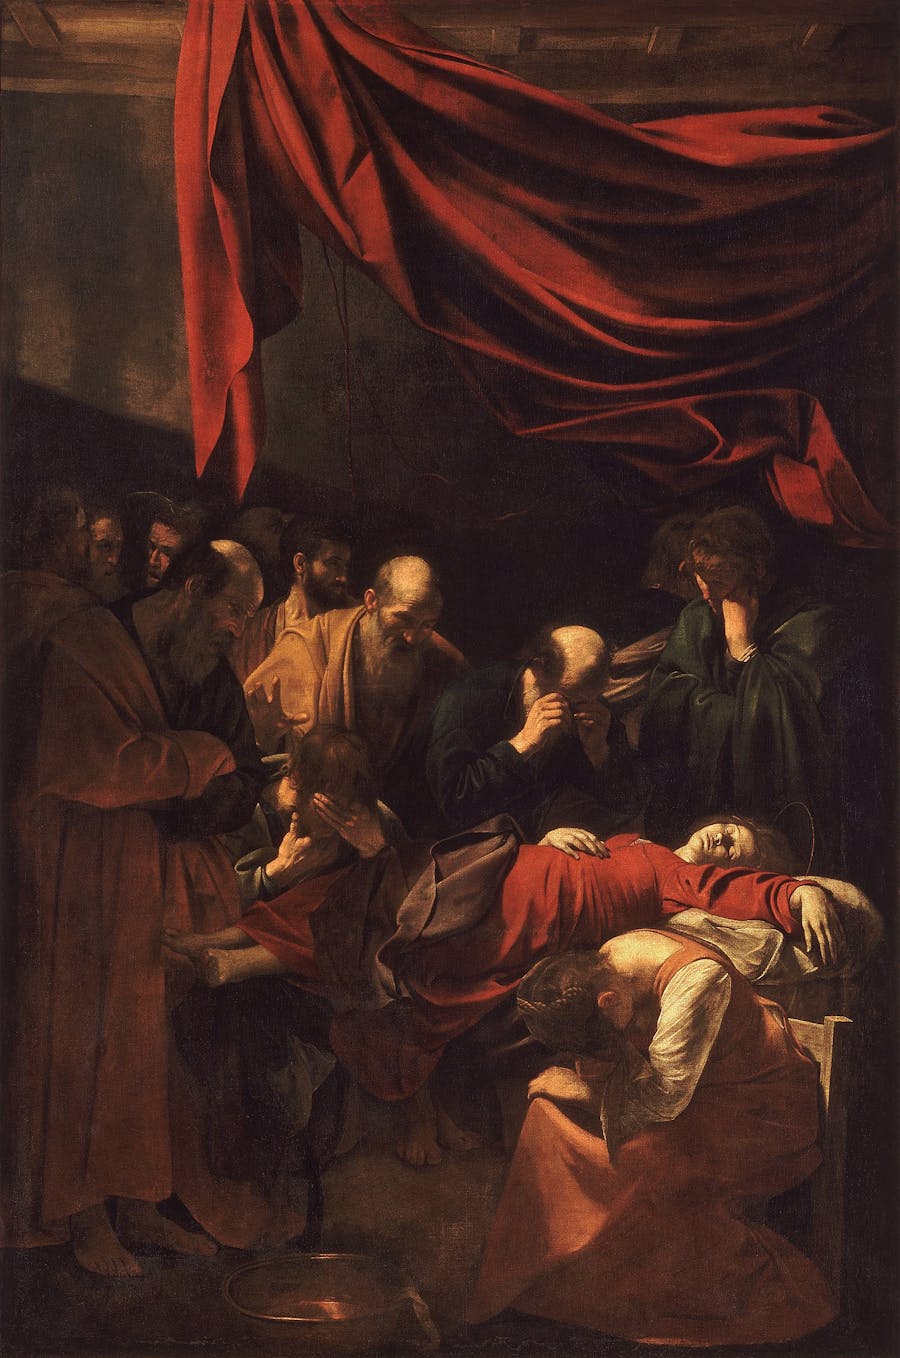 Caravaggio (1571-1610), ‘Death of the Virgin’, c.1606, oil on canvas, 369 cm x 245 cm, Louvre Paris. Public domain image